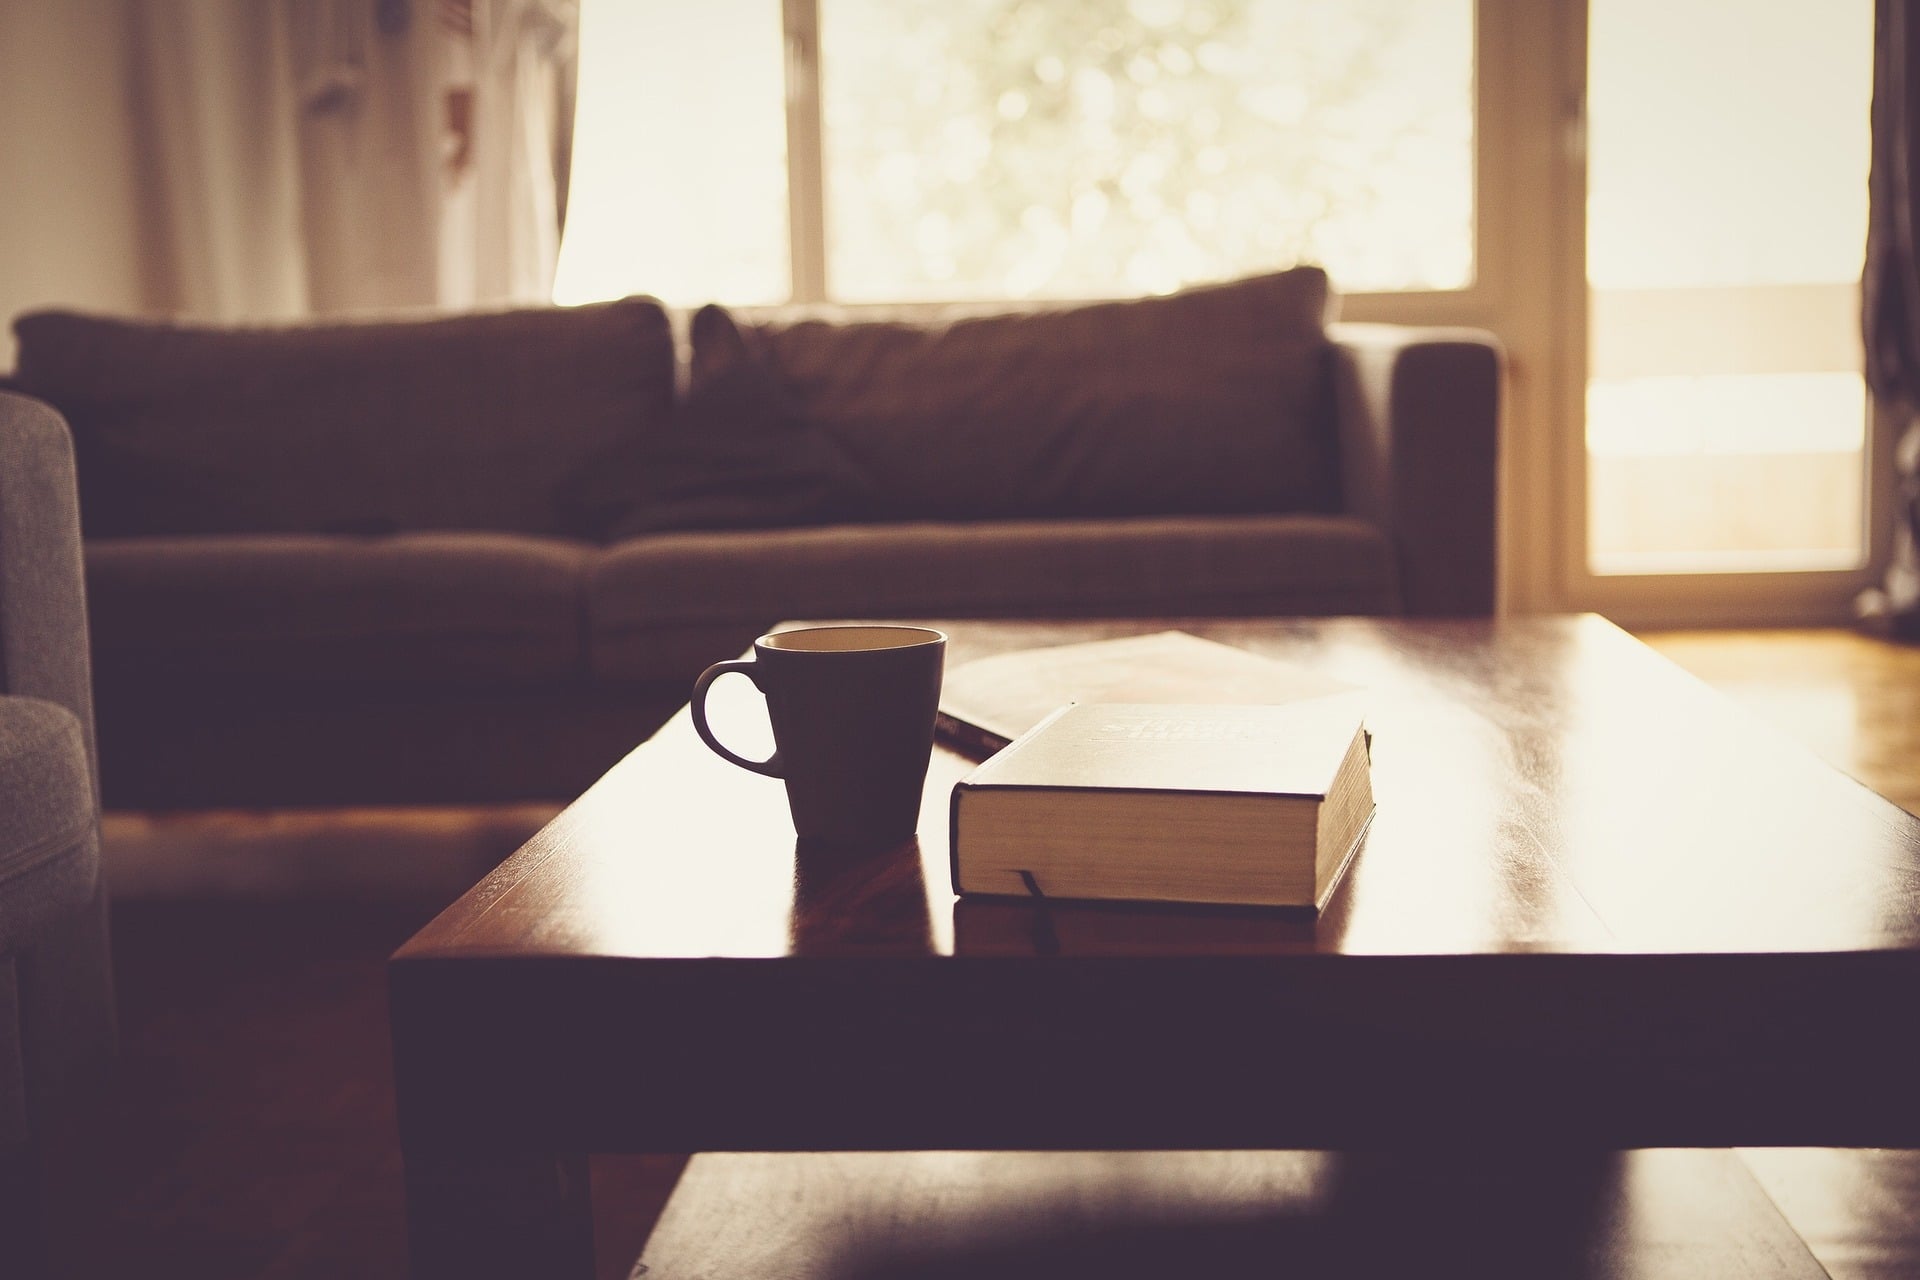 Sala com mesa de centro, com xícara e livro, sofá ao fundo. Imagem ilustrativa texto